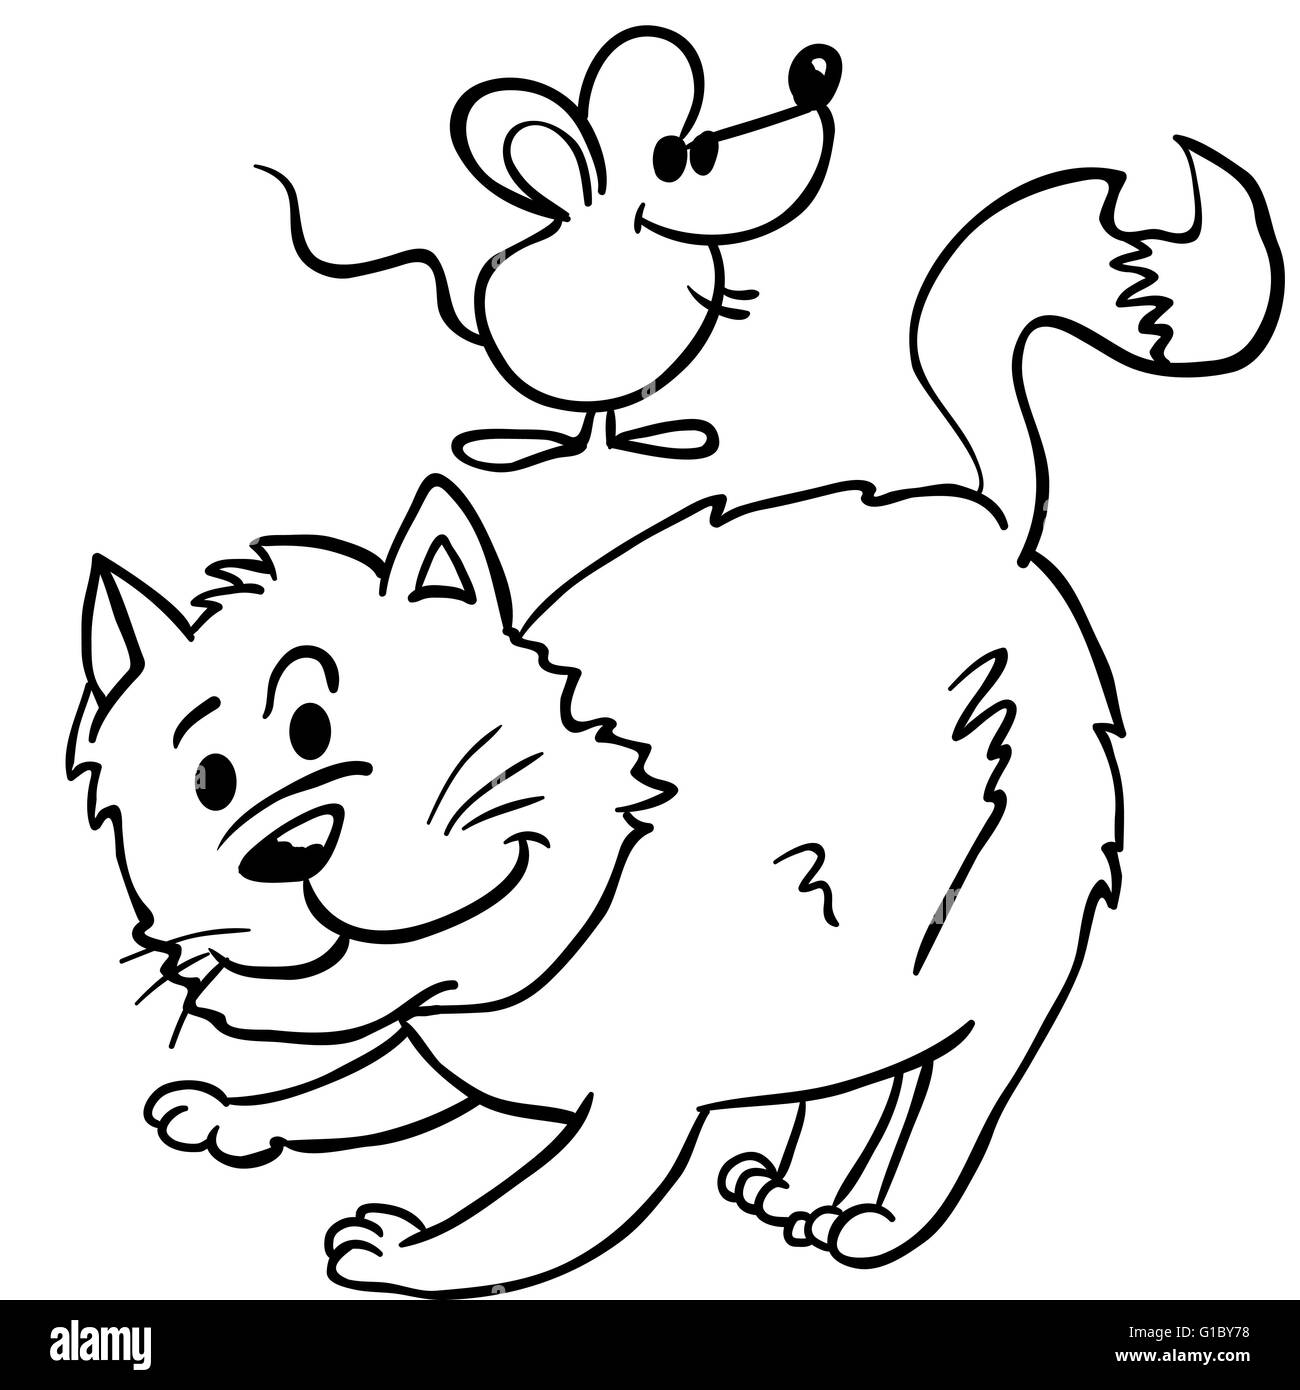 Einfache Schwarz Weiss Katze Und Maus Karikatur Illustration Stock Vektorgrafik Alamy